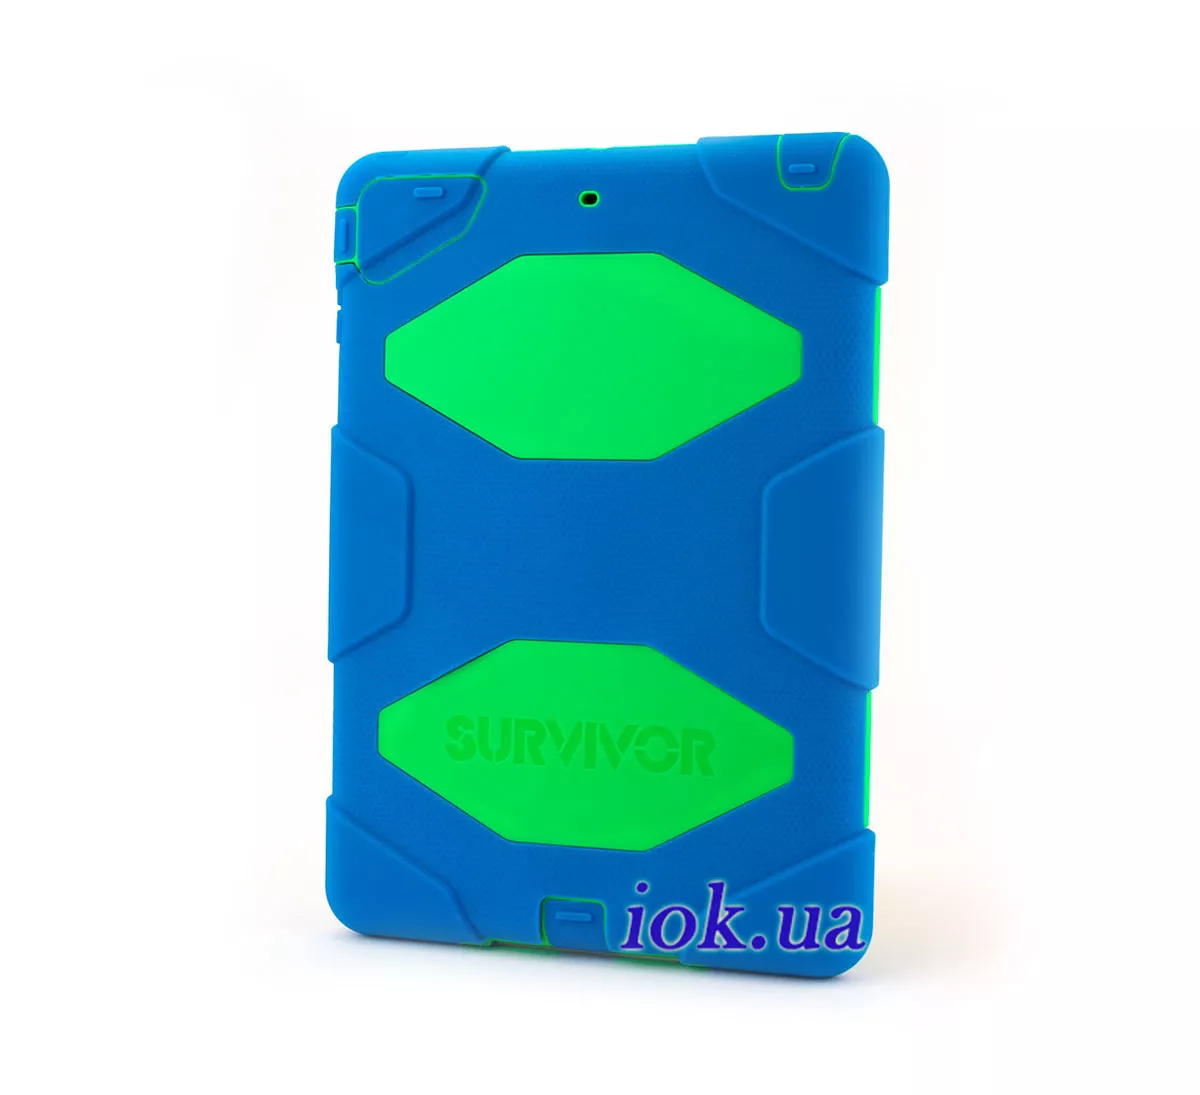 Чехол Griffin Survivor для iPad Air, синий с зеленым